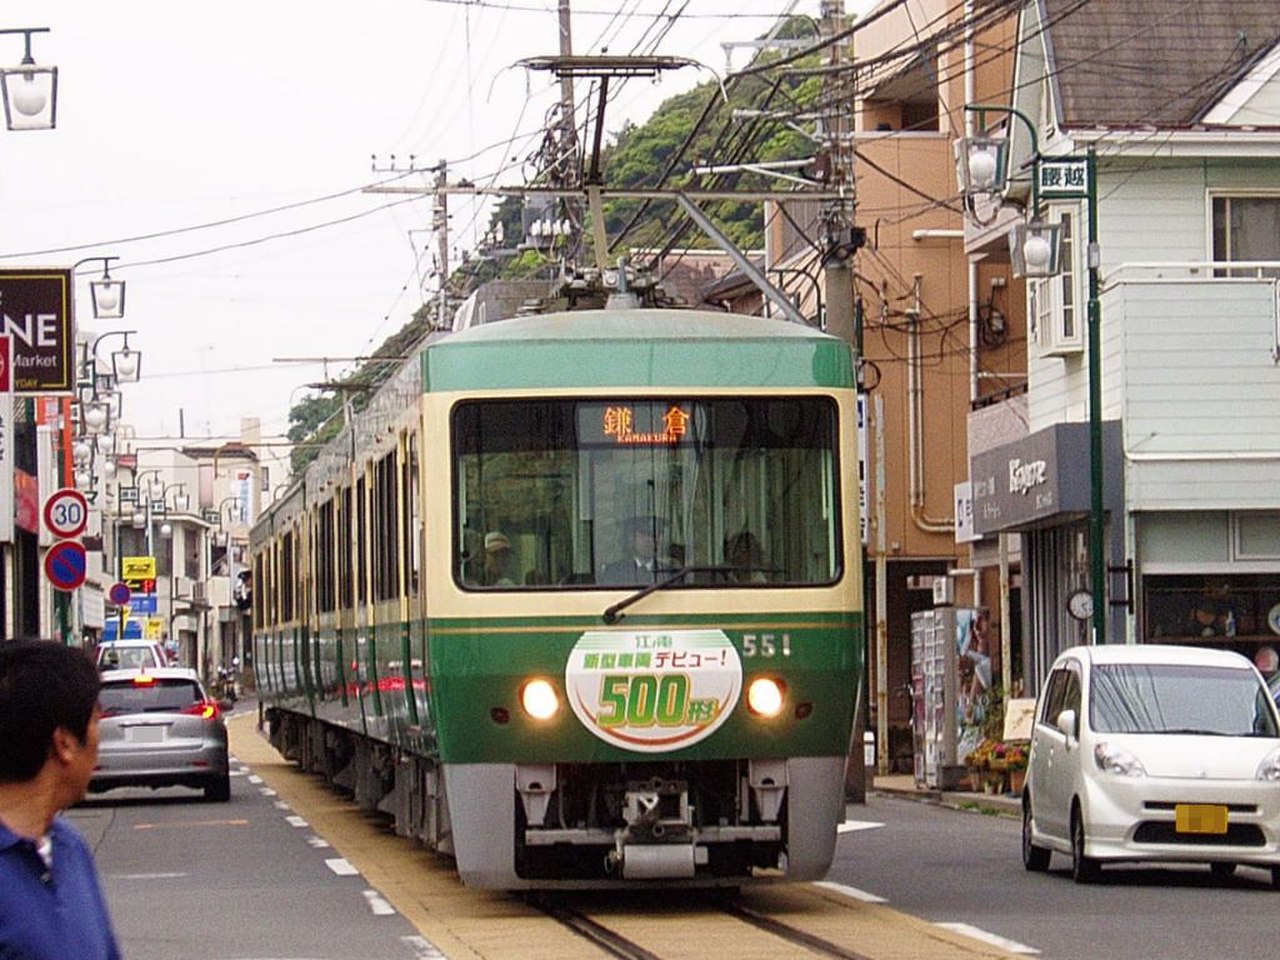 трамвай в японии